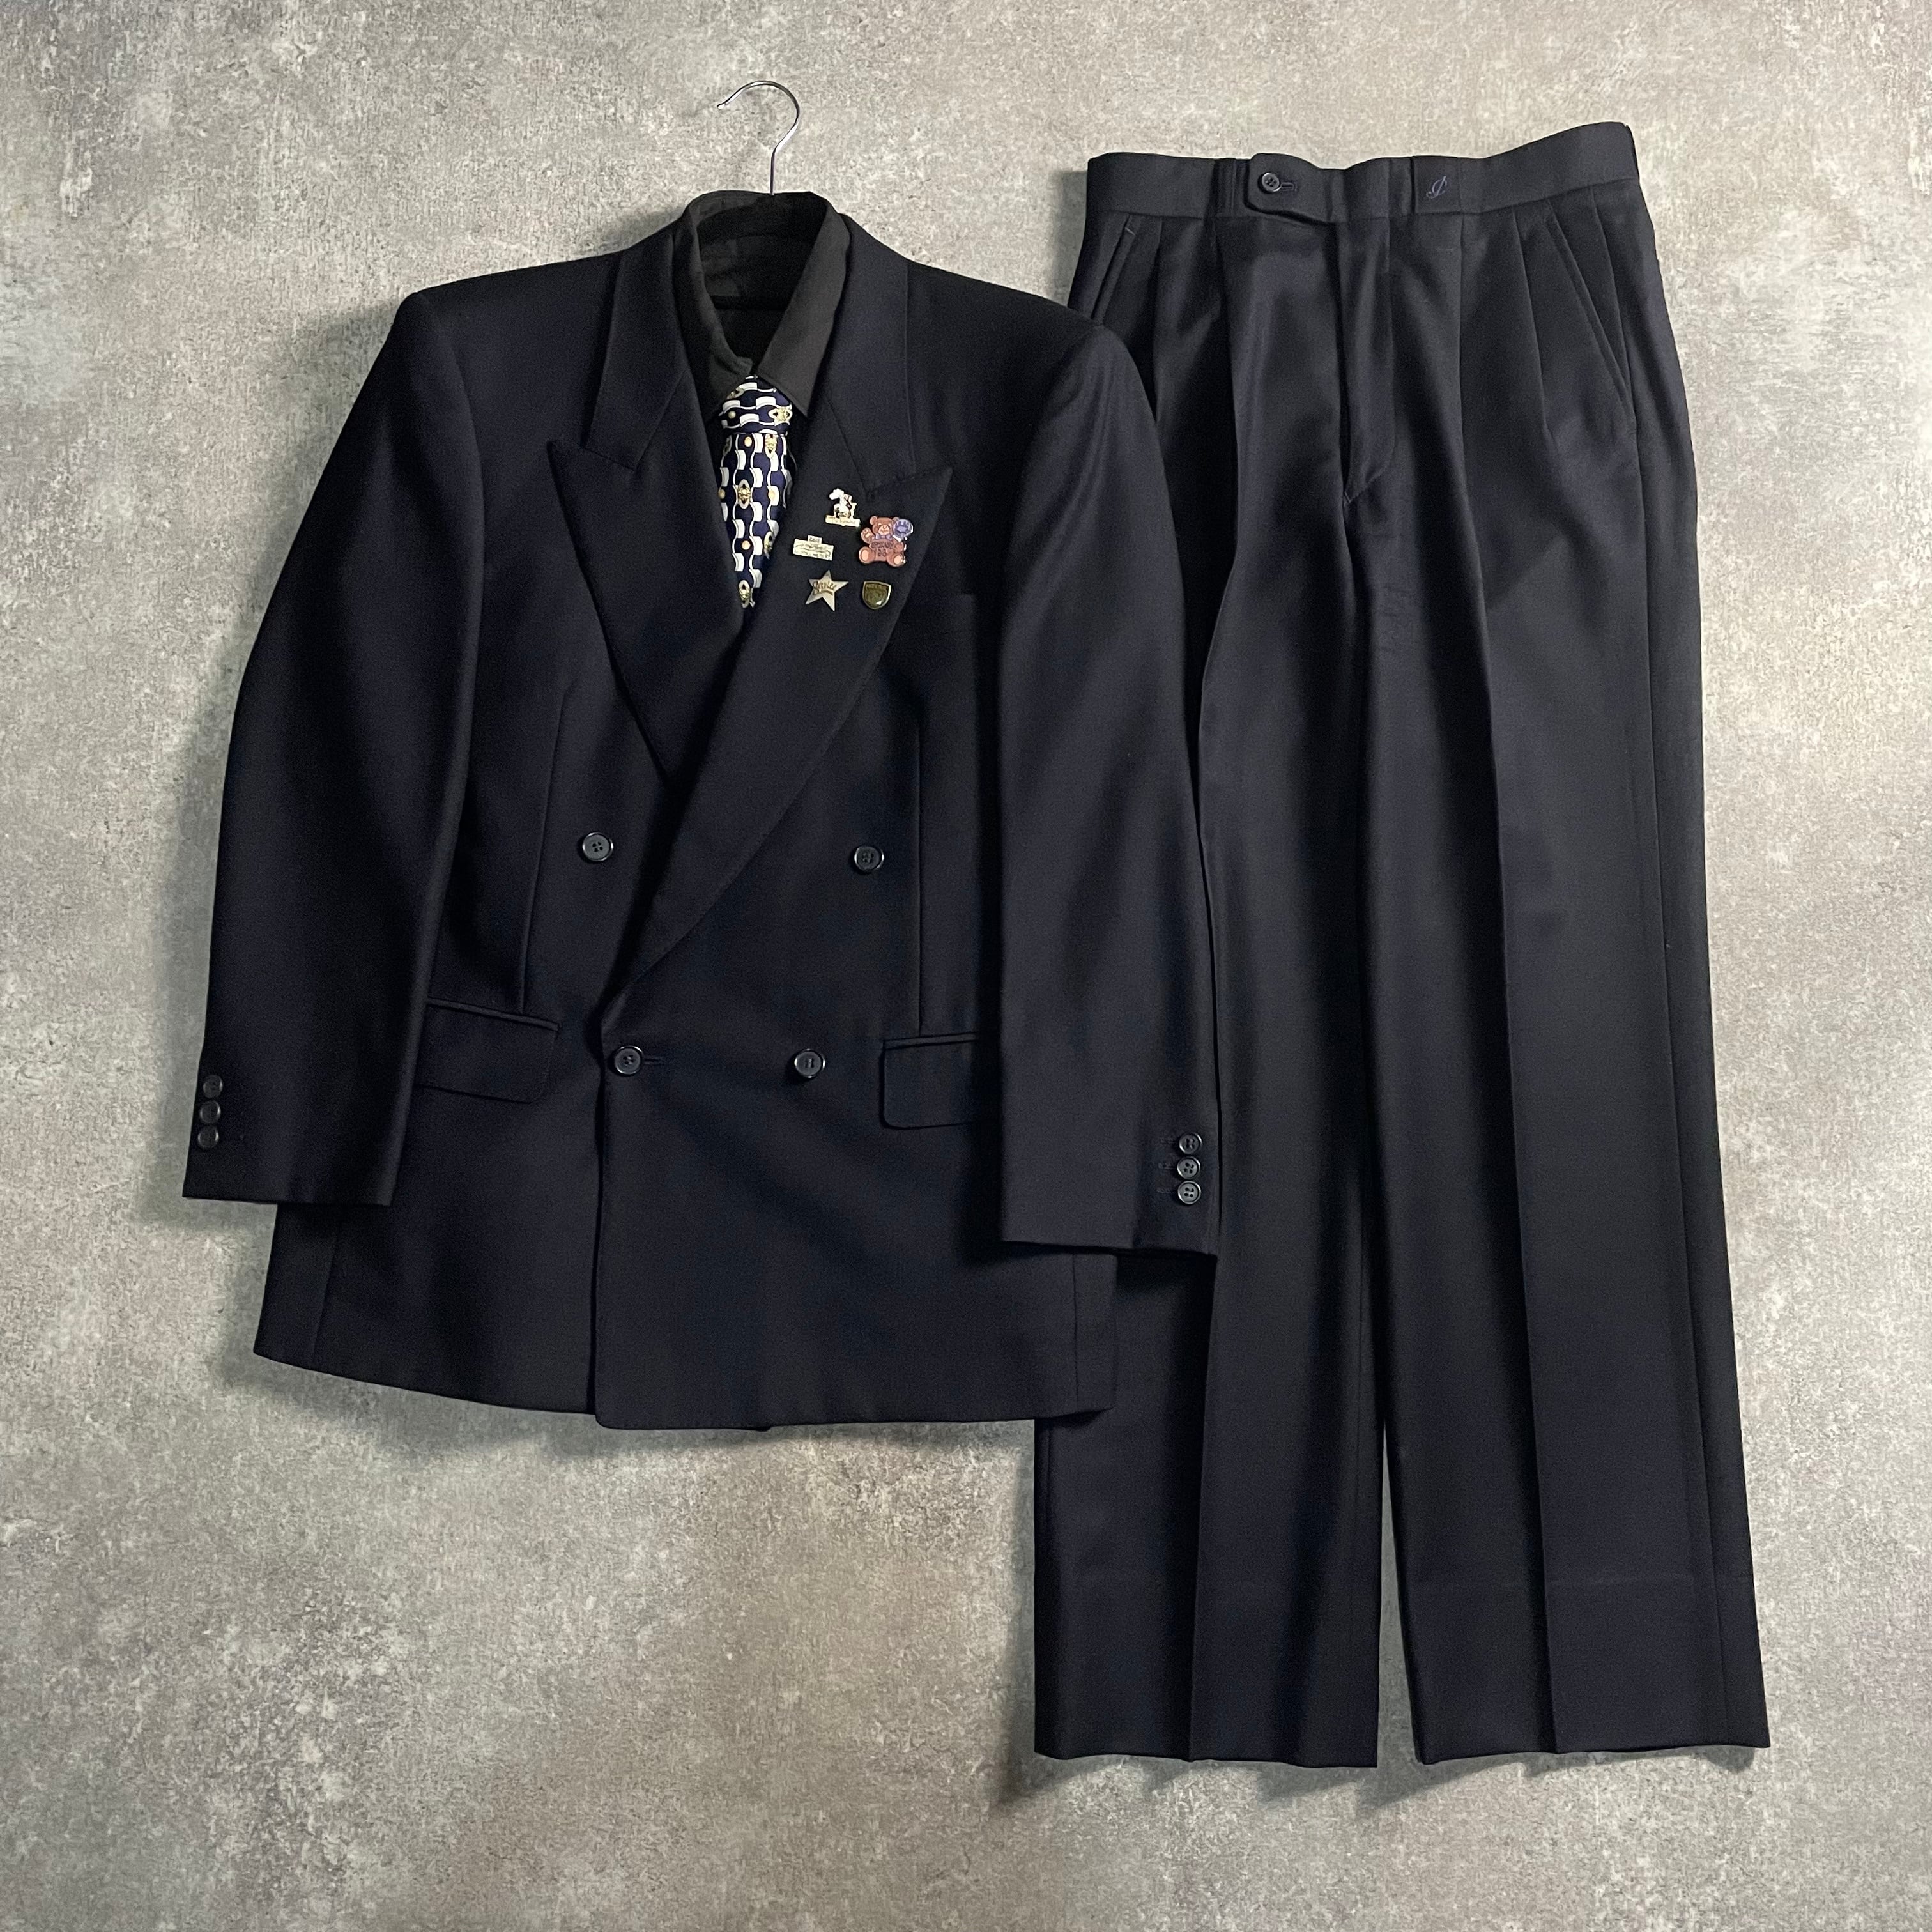 90s vintage レトロセットアップ スーツ ピンズ  No.11 成人式古着屋salone